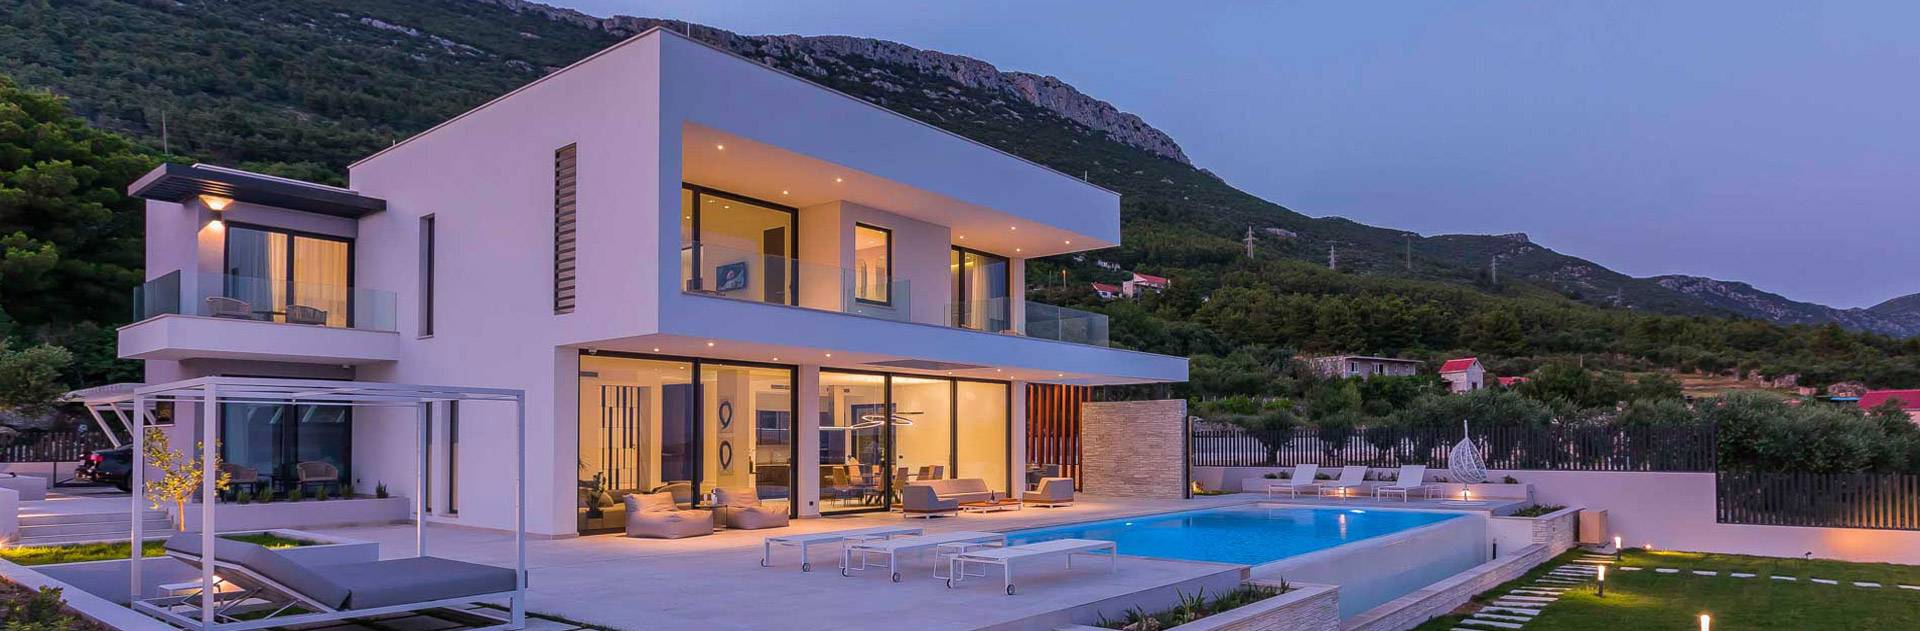 Luxury Heavens Villa Ebony Croatia 2